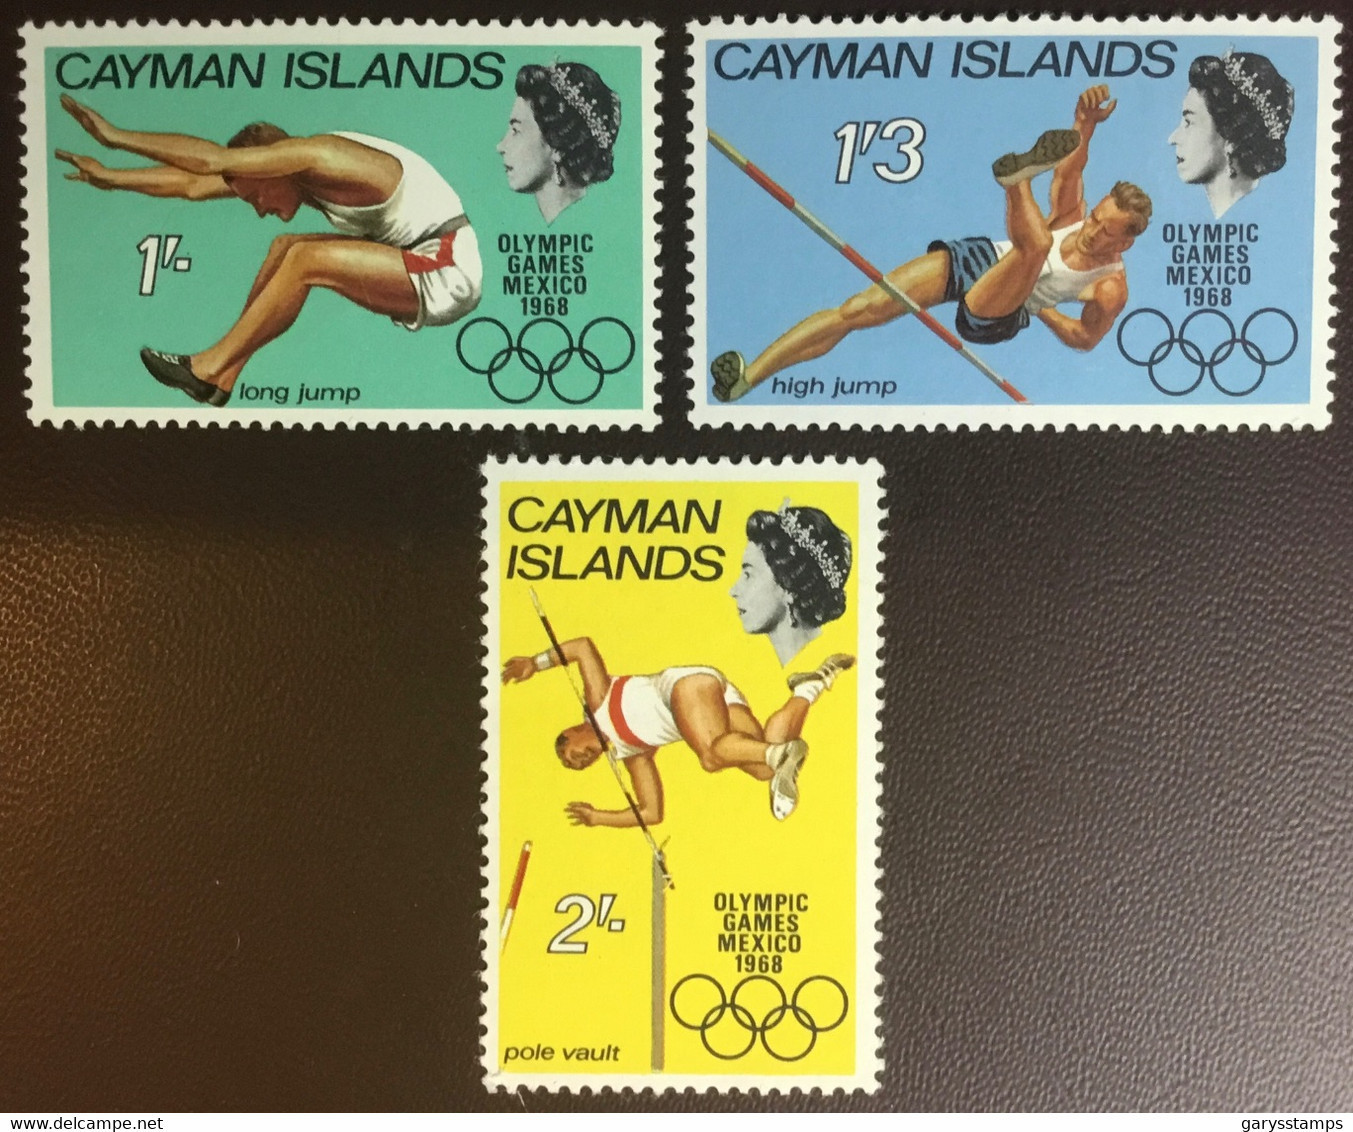 Cayman Islands 1968 Olympic Games MNH - Caimán (Islas)